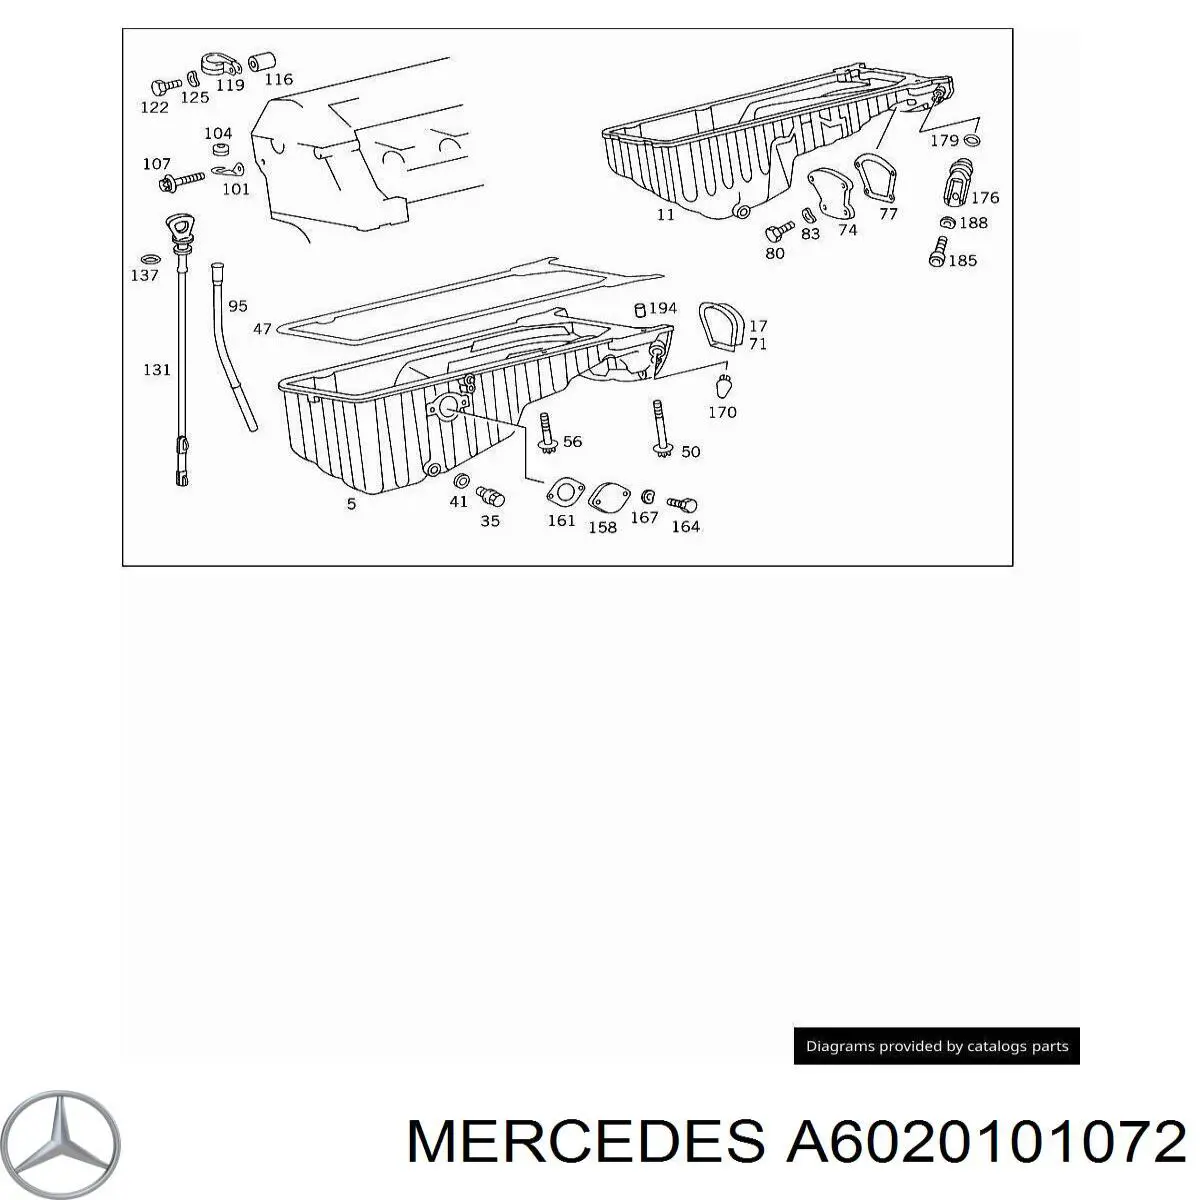 6020101072 Mercedes sonda (indicador do nível de óleo no motor)